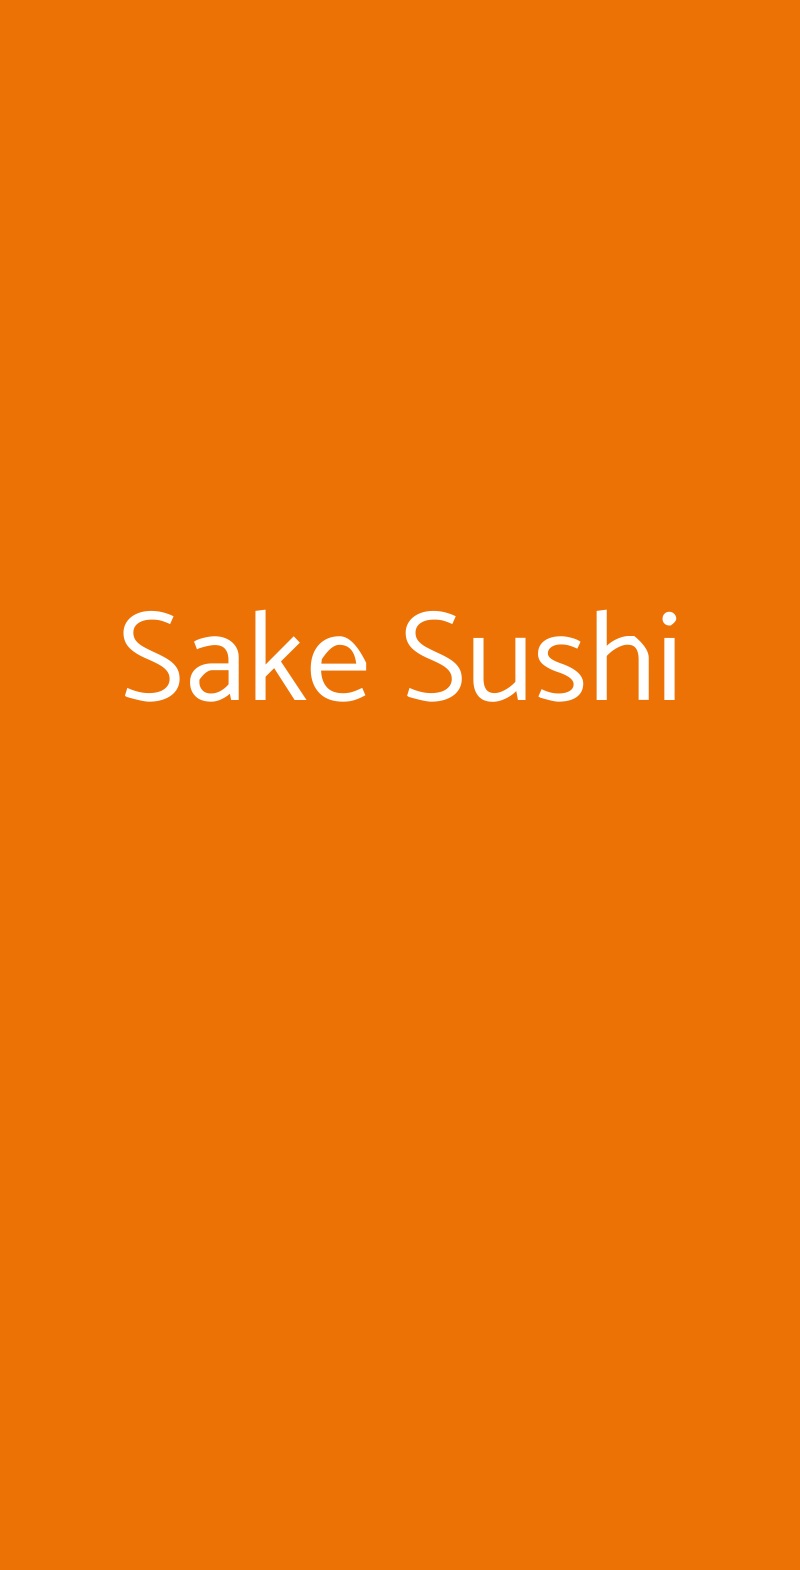 Sake Sushi Milano menù 1 pagina